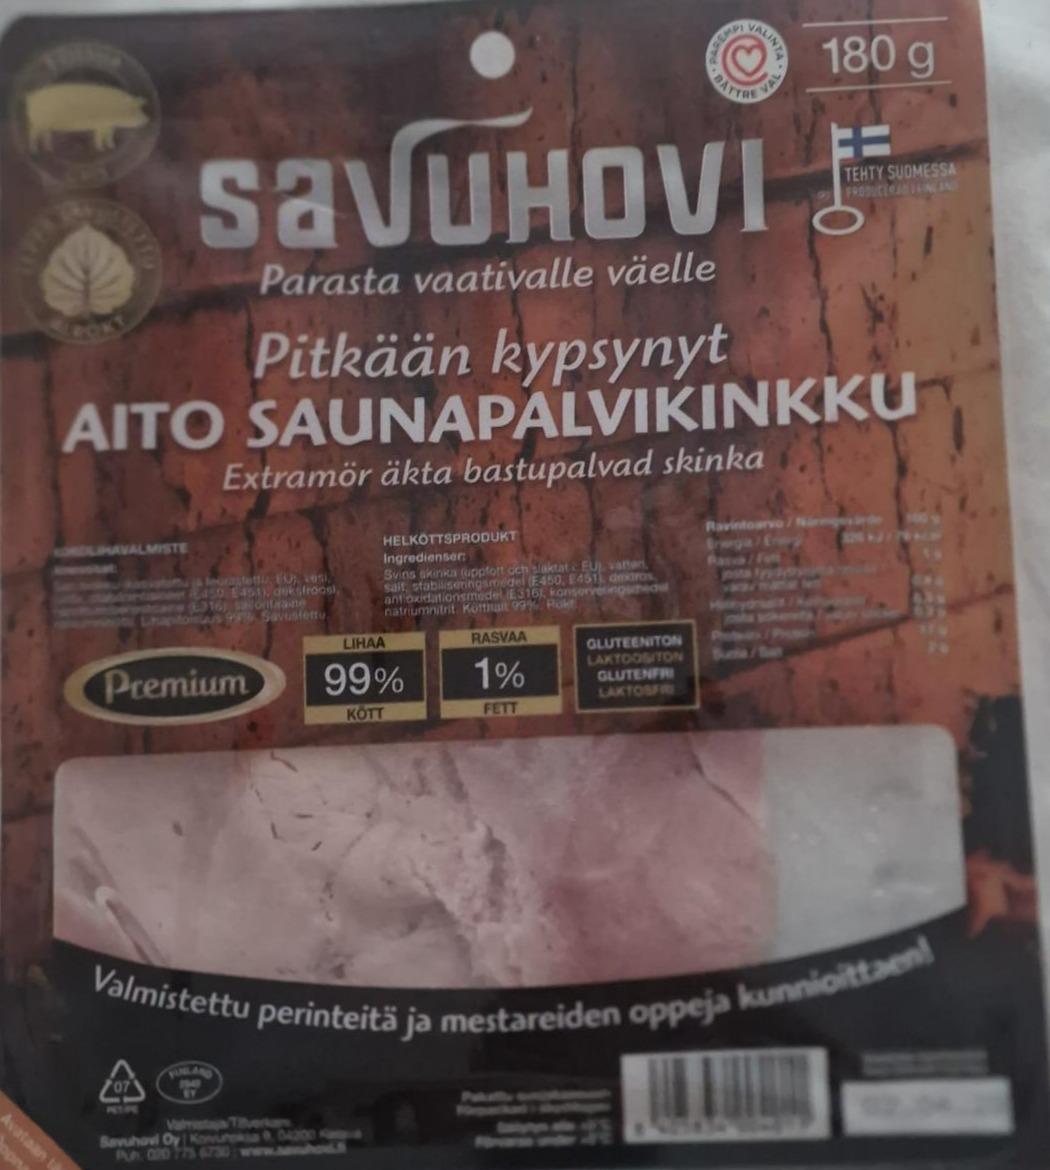 Fotografie - Pitkään kypsynyt aito saunapalvikinkku Savuhovi